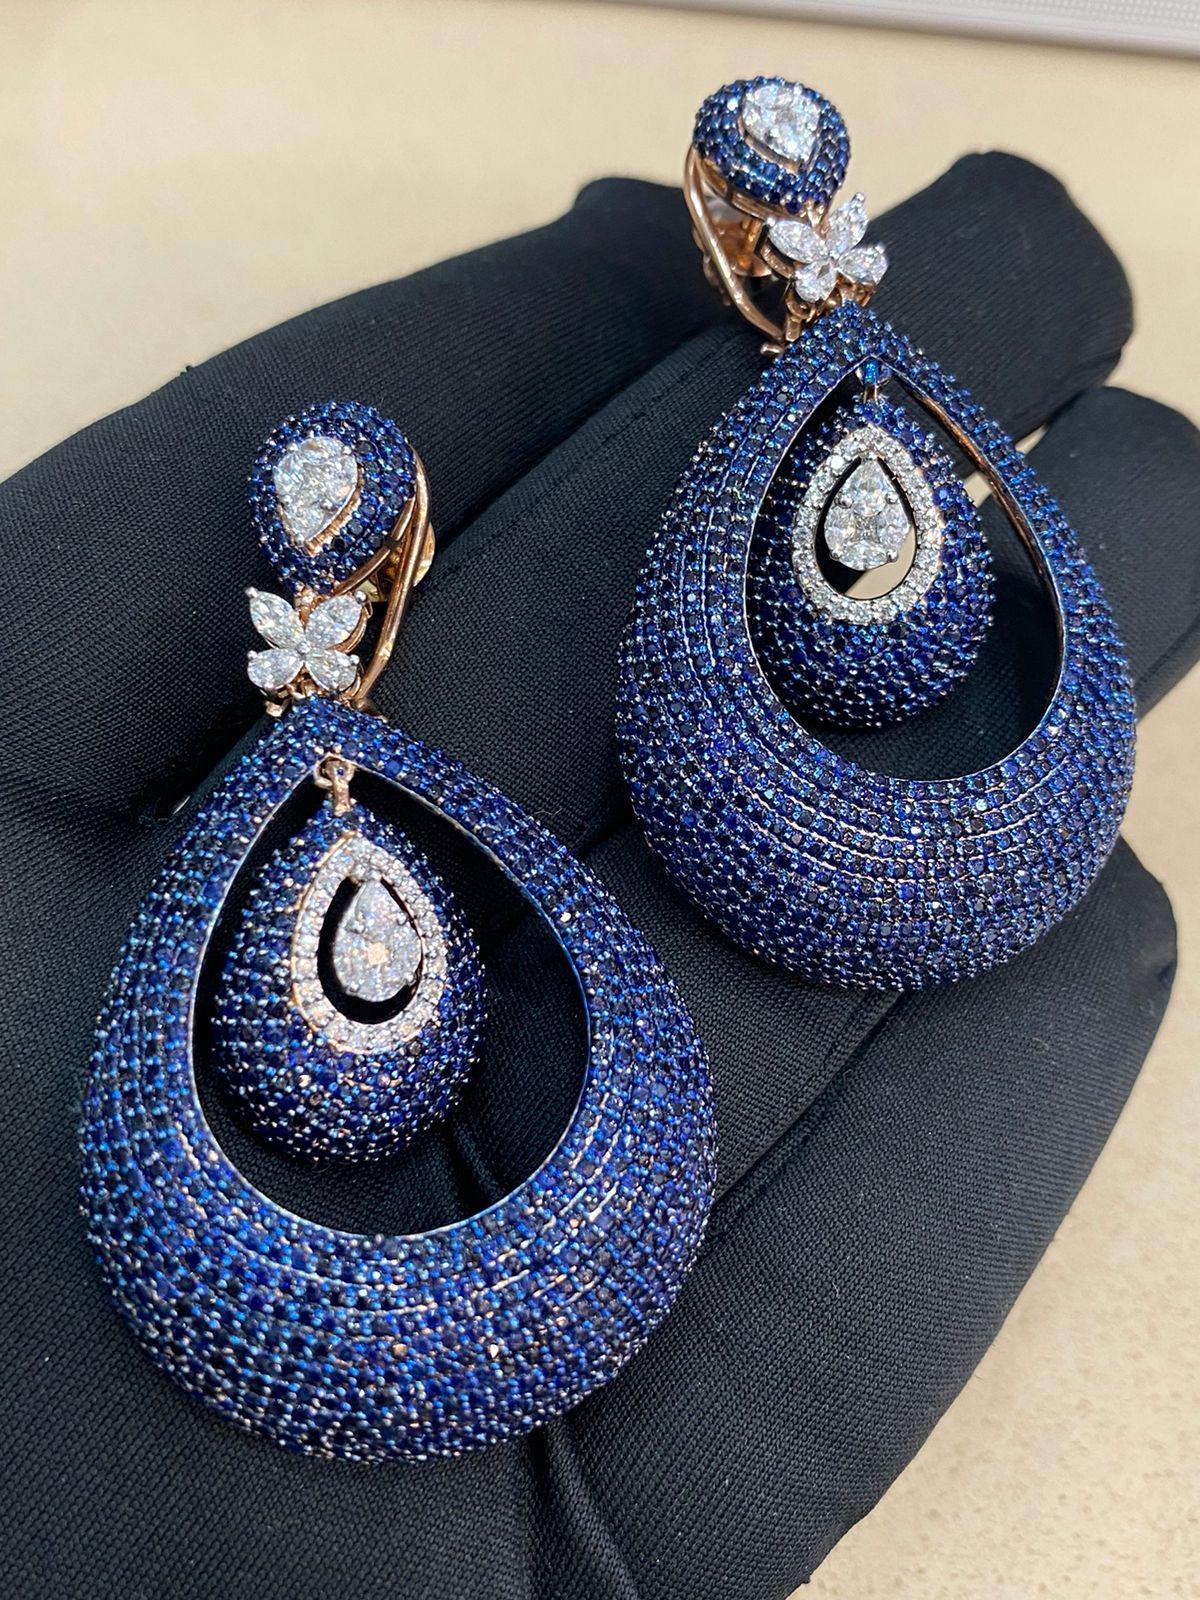 Ces boucles d'oreilles pendantes exquises présentent 1,40 carats de diamants marquise, poire, princesse et ronds, ainsi que 18,90 carats de saphirs bleus, le tout serti dans de l'or rose 14 carats. Un cadeau idéal pour toutes les occasions